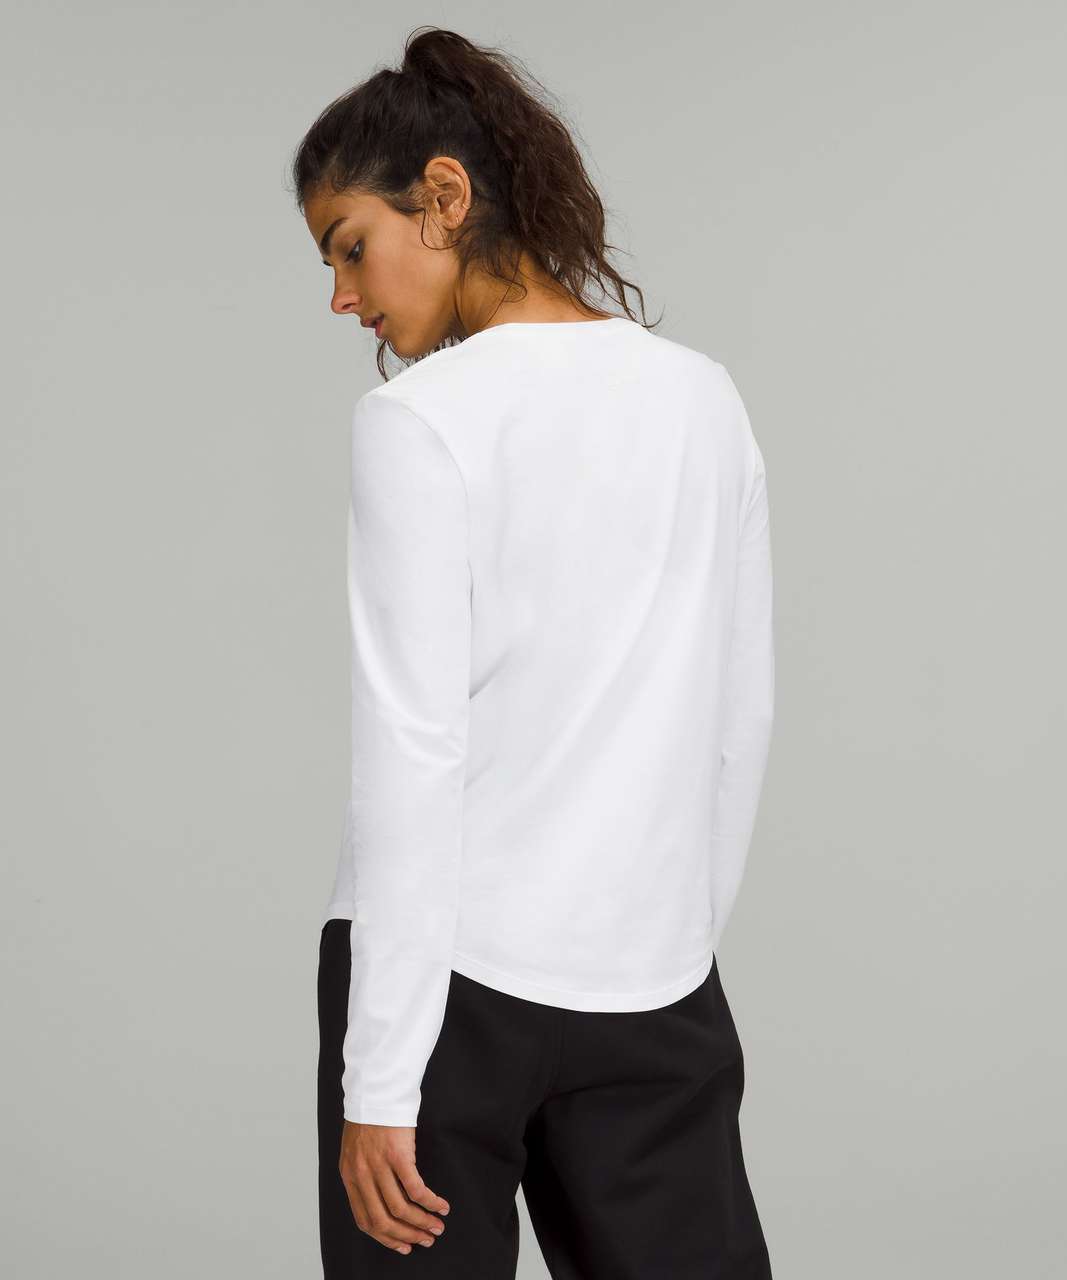 Lululemon Love Long Sleeve Shirt - White